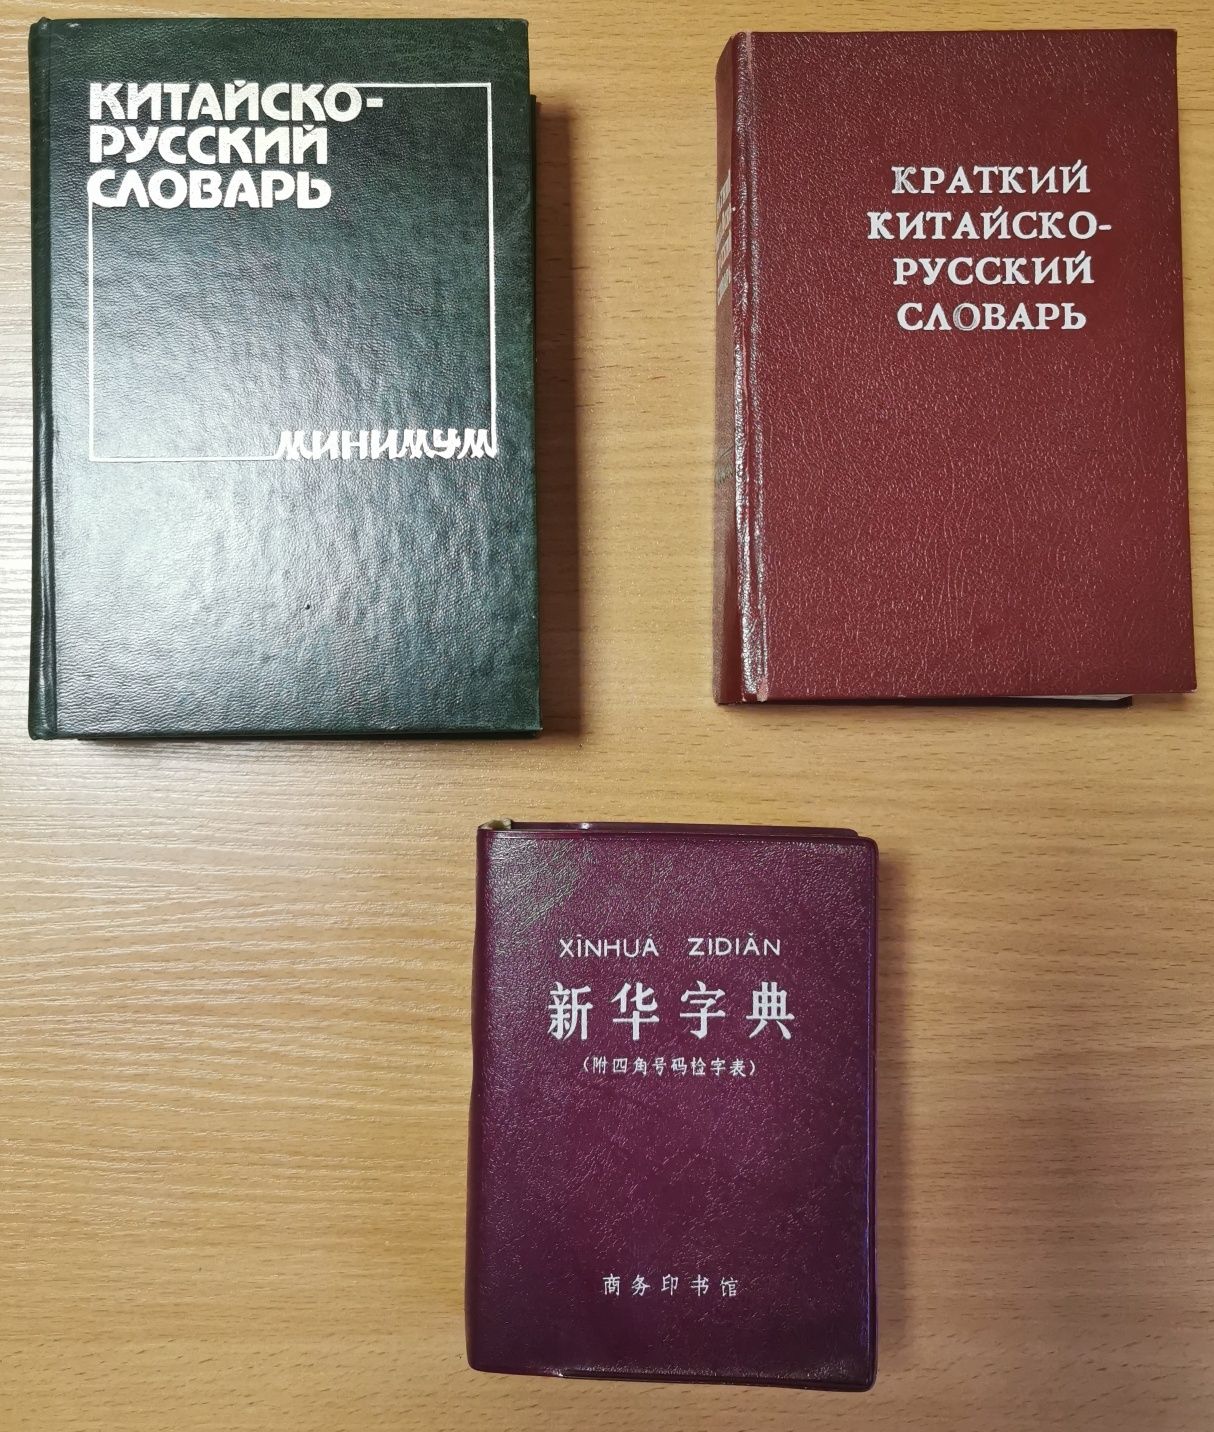 Словари русско-китайские и китайско-русские и курс китайского языка